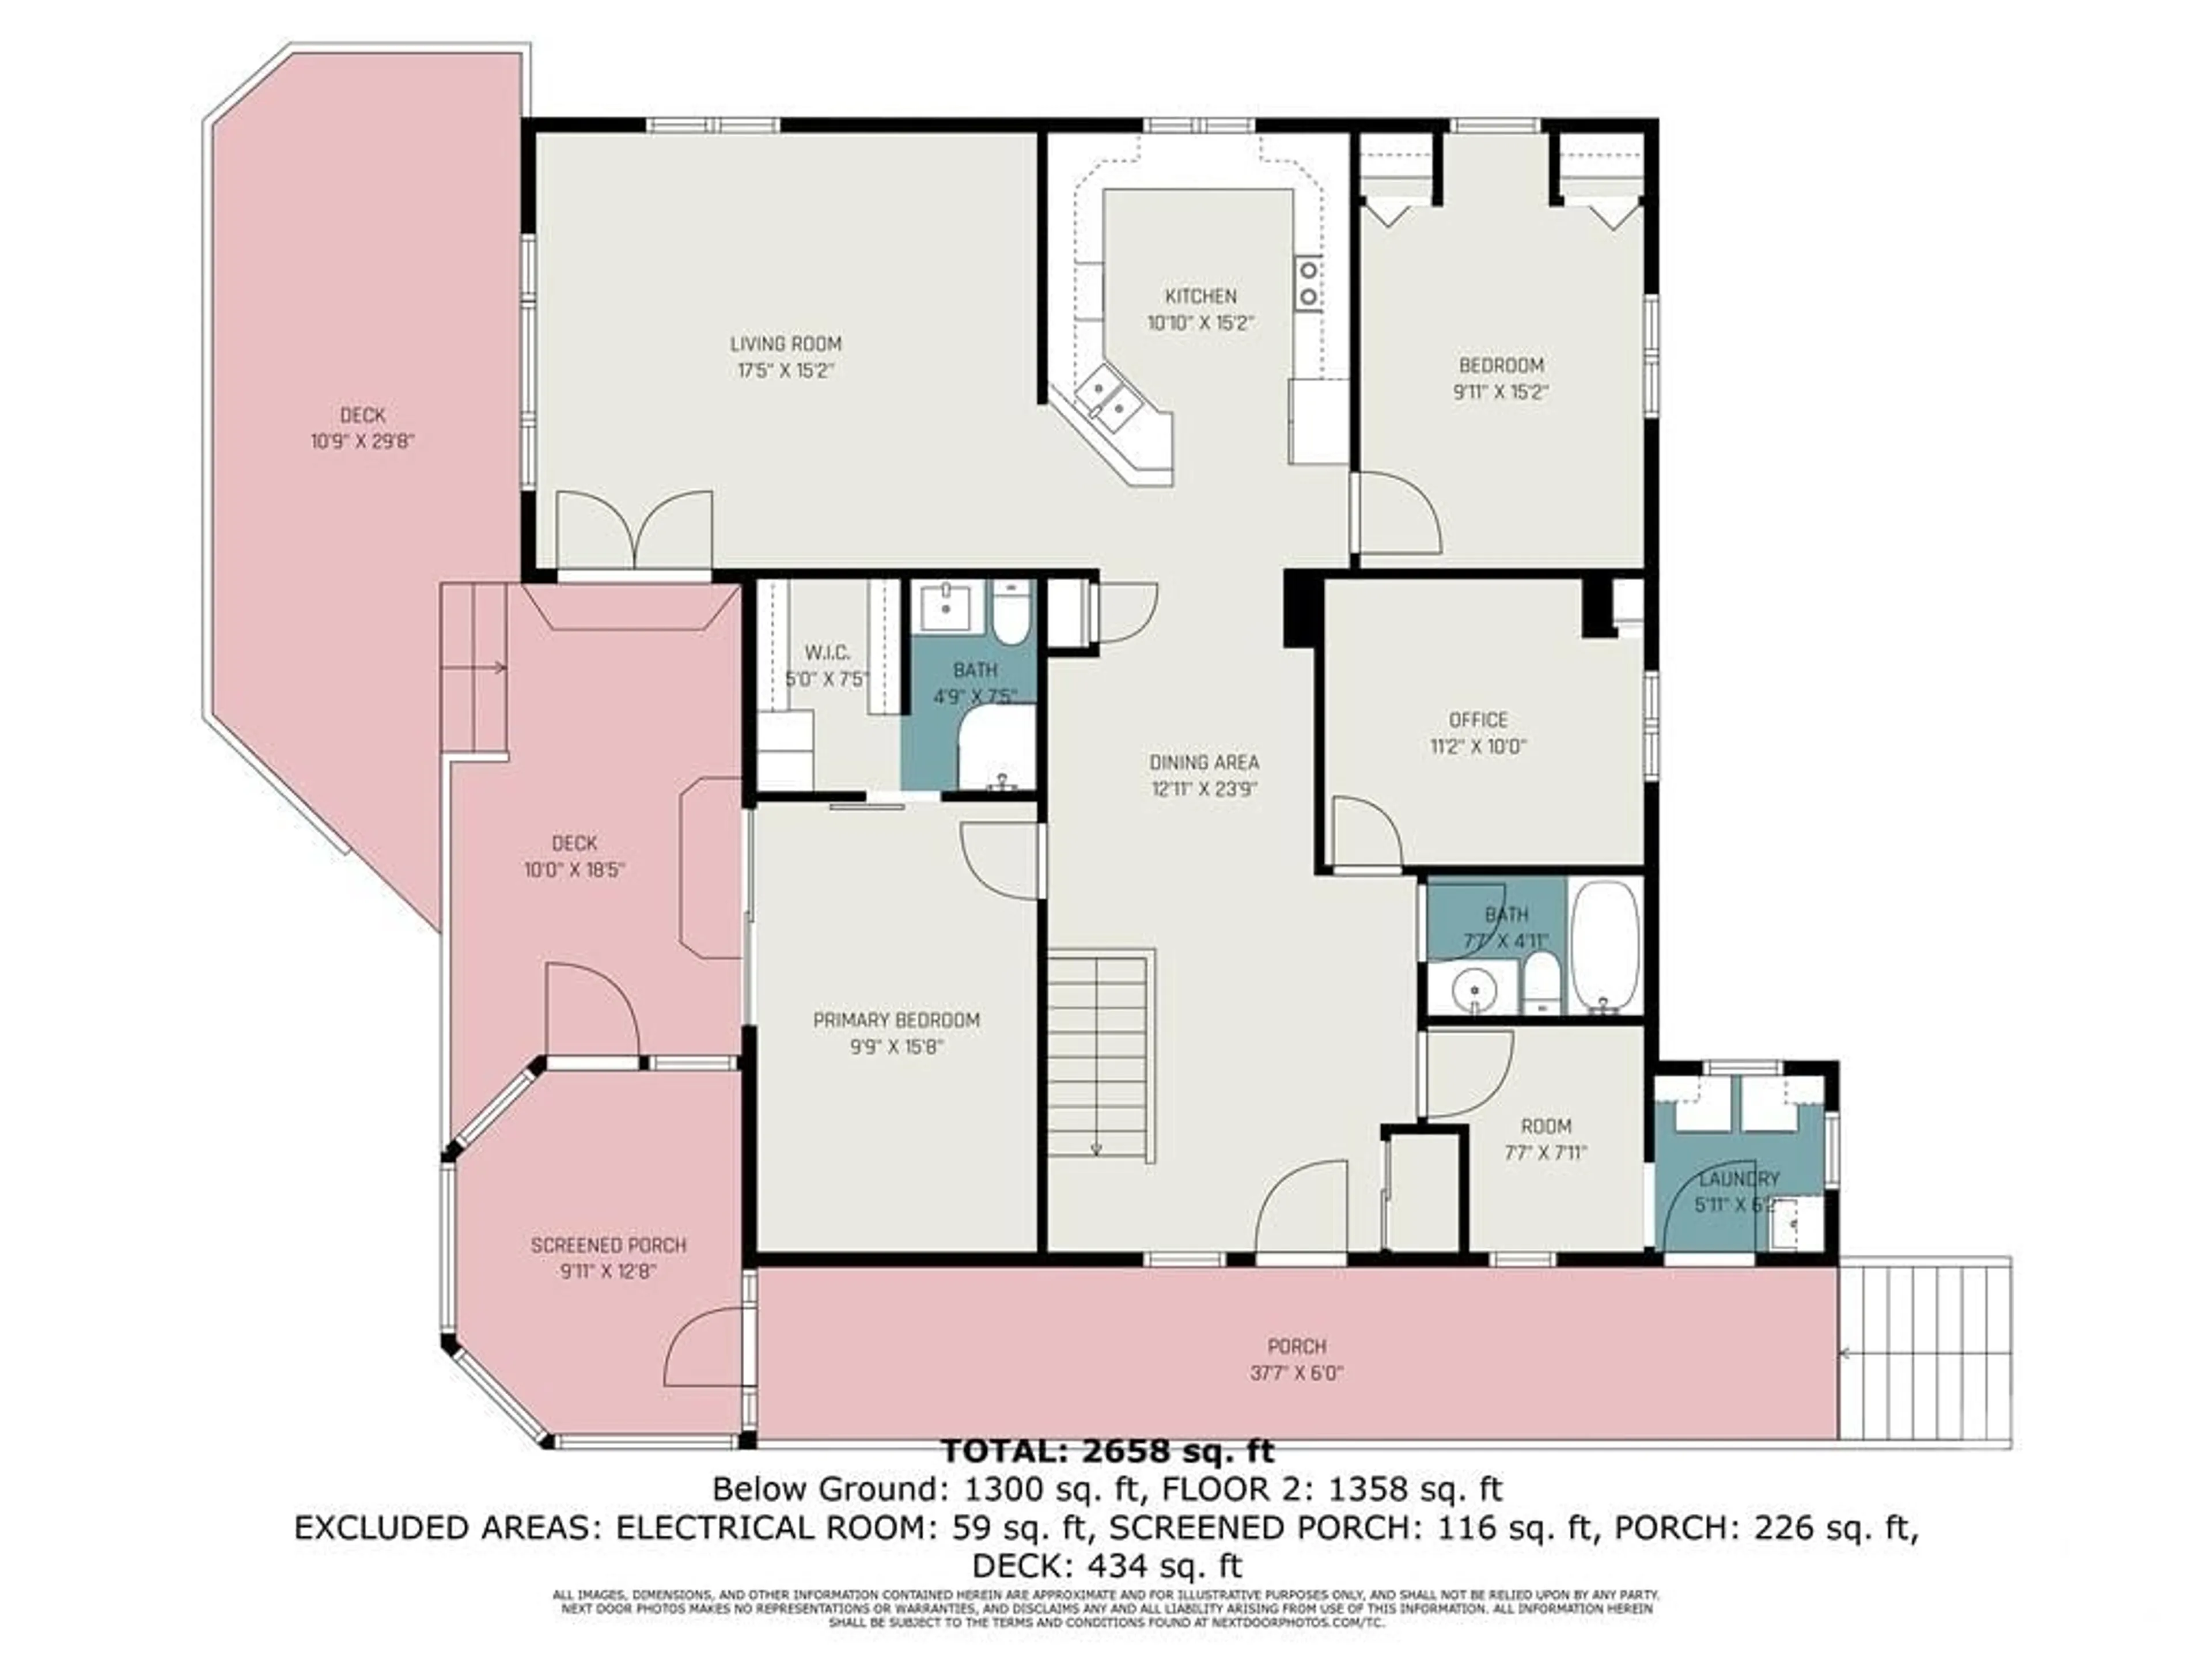 Floor plan for 540 CARDINAL Lane, Renfrew Ontario K7V 3Z8